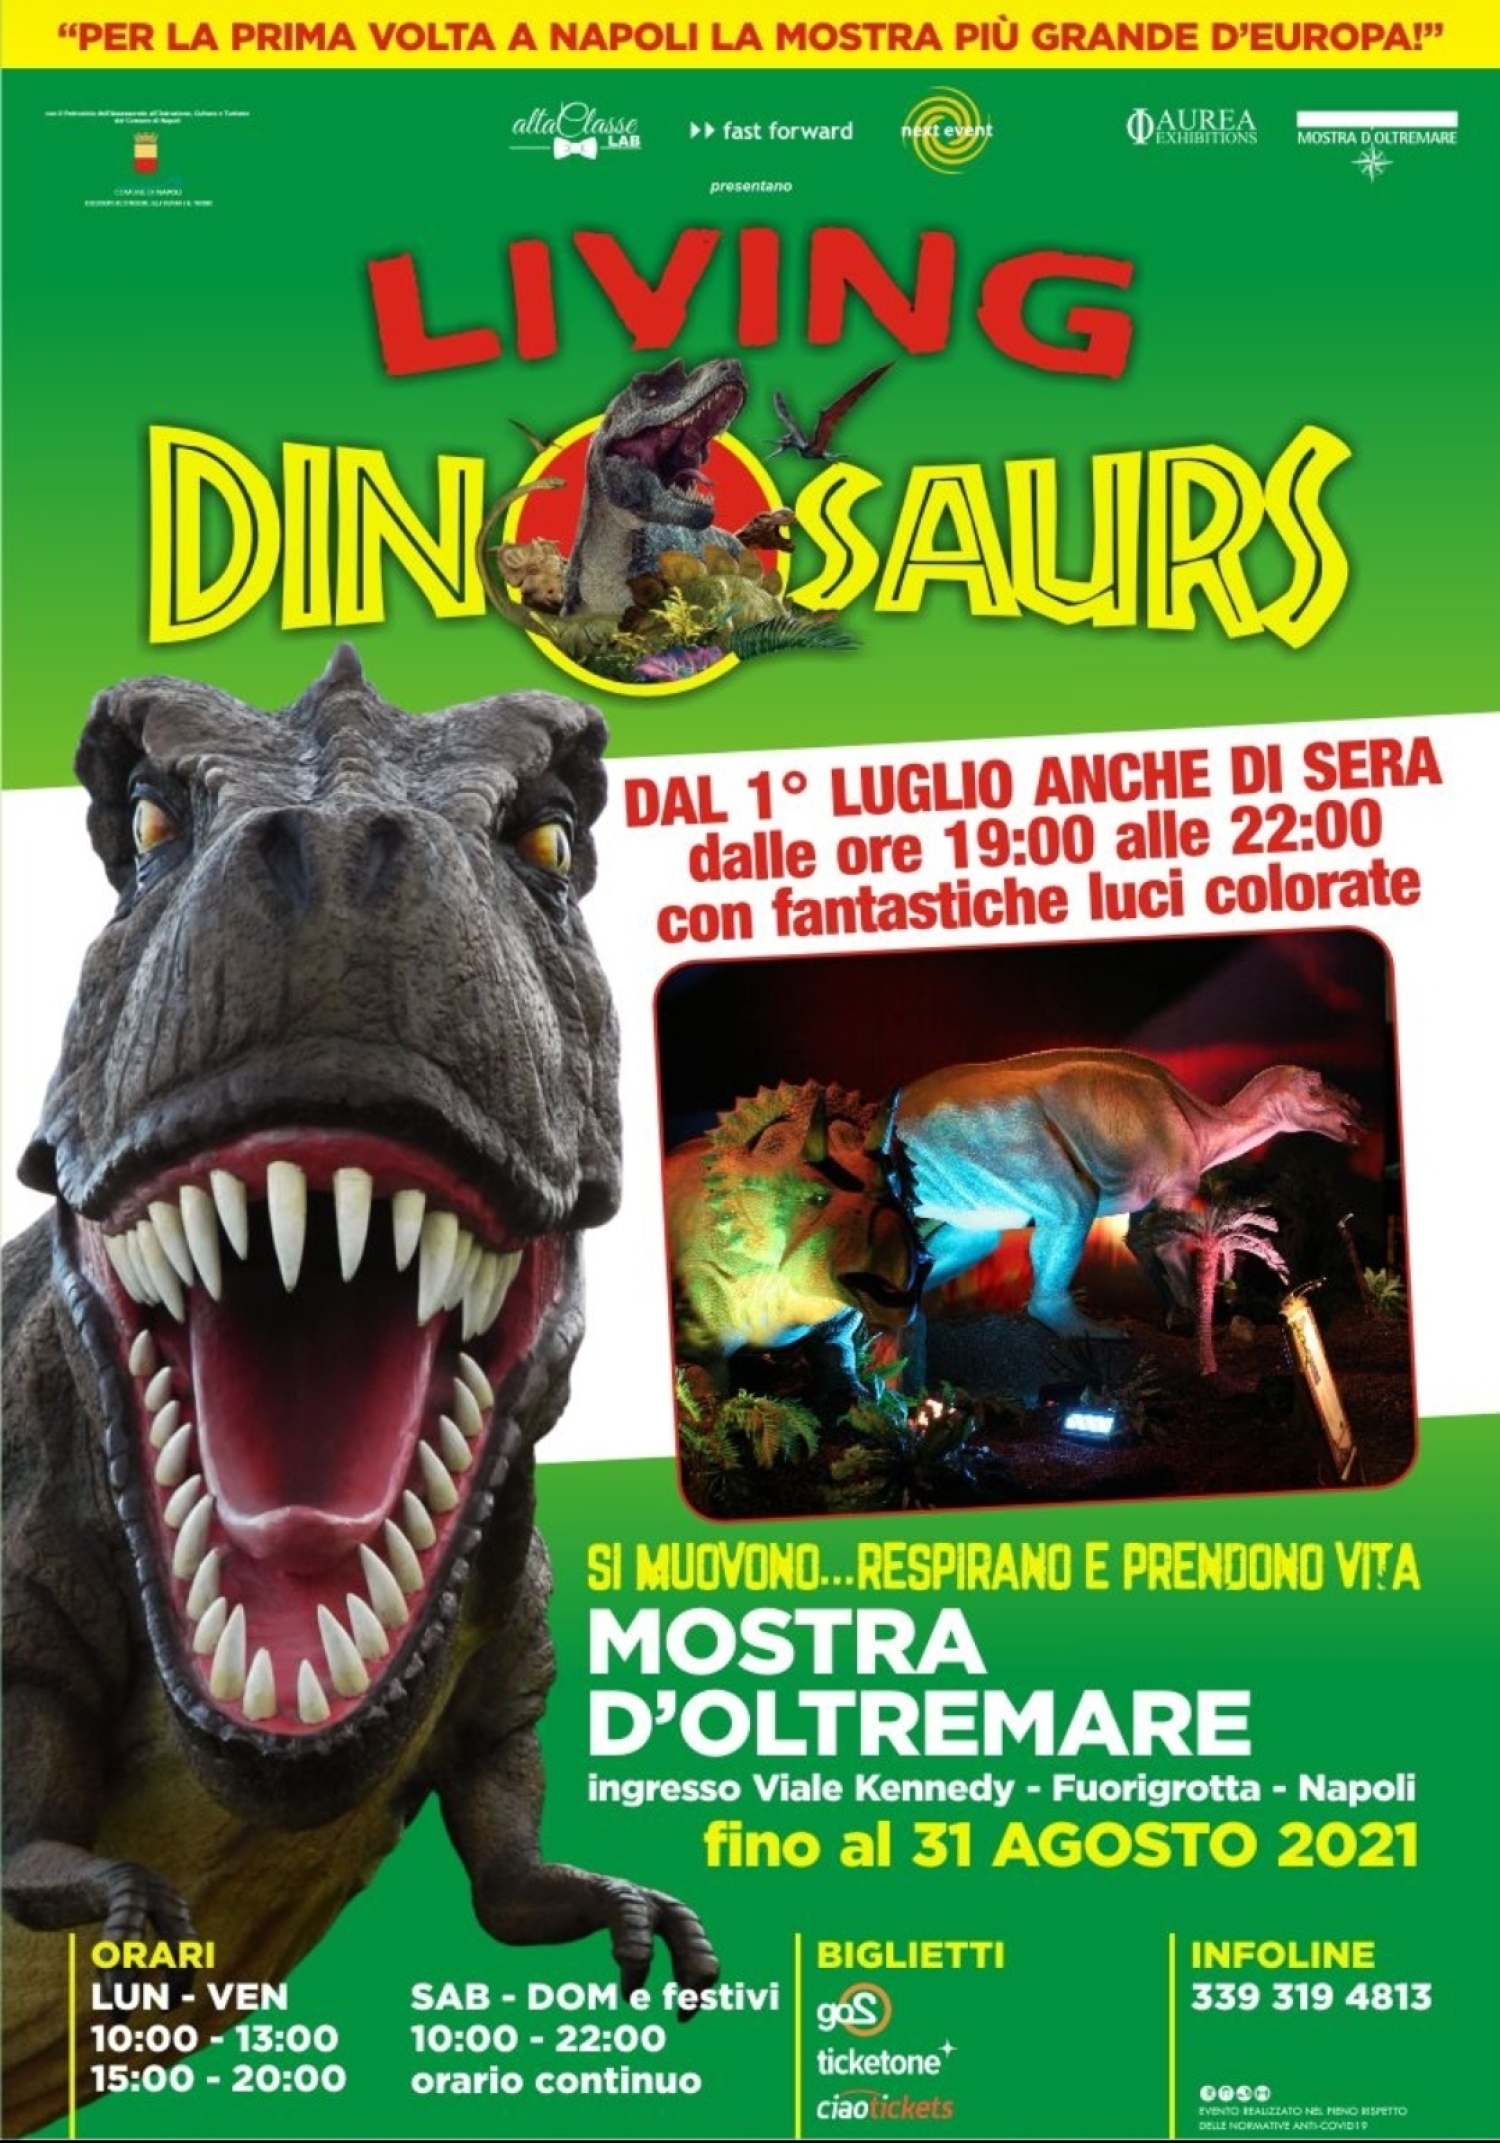 Napoli e i Dinosauri: la piú grande mostra d'Europa!